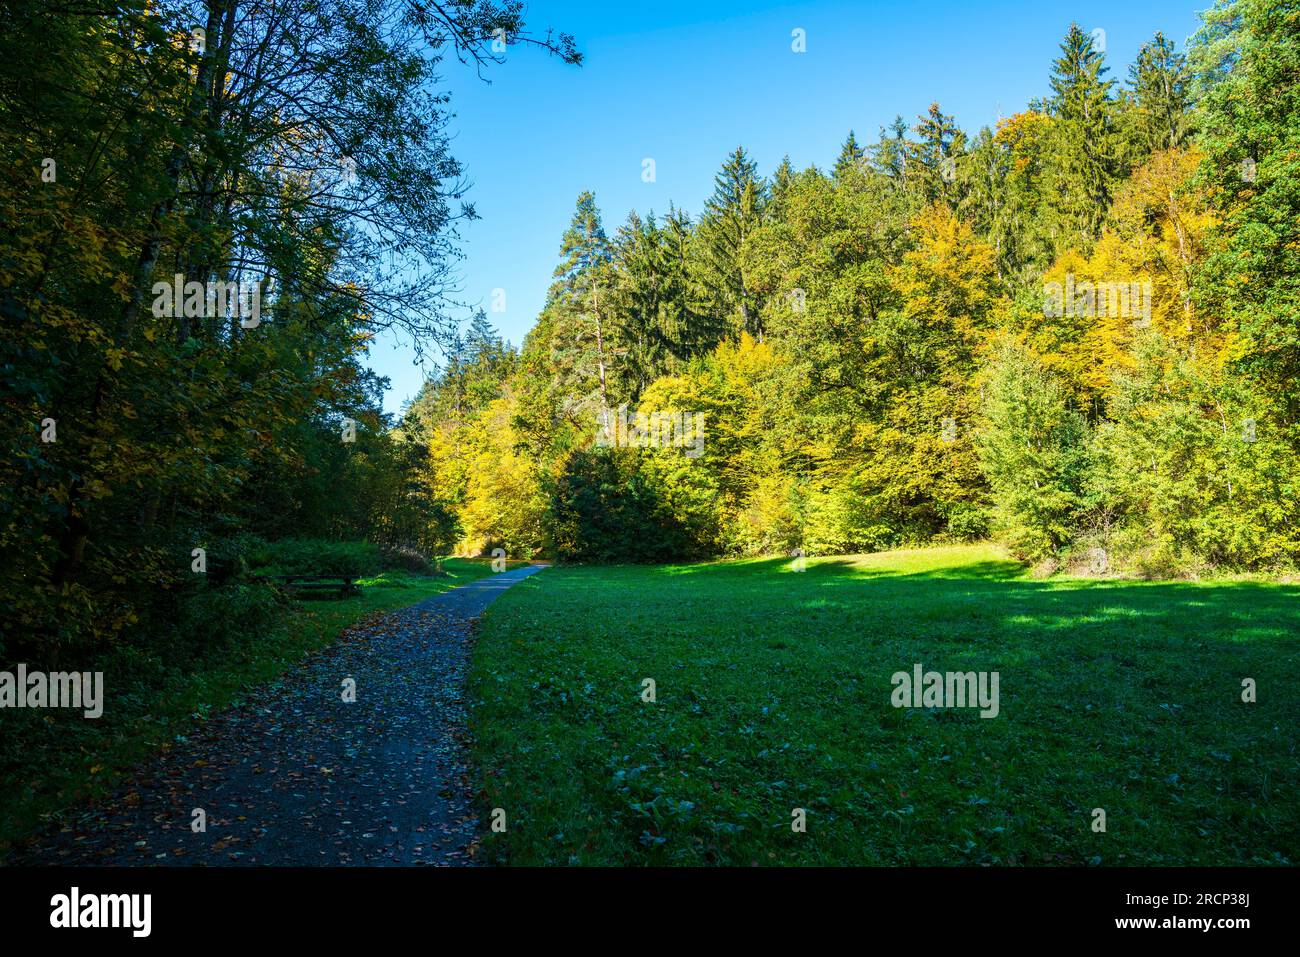 6596 Alemania, árboles de colores en el borde del bosque en la temporada de otoño con forma curva paralela a los árboles y el sol con el cielo azul Foto de stock